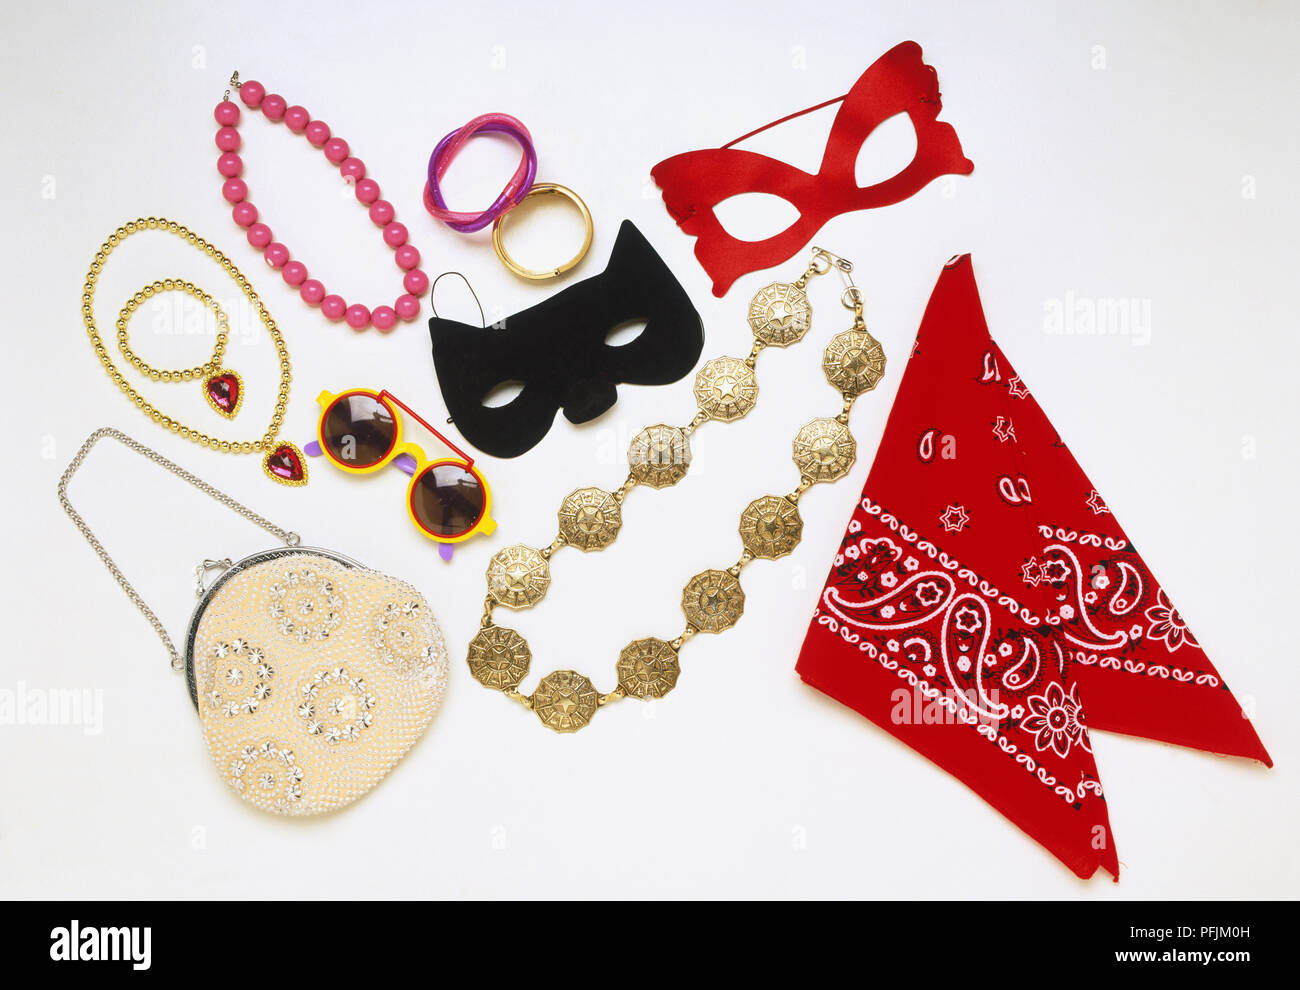 Articoli per vestirsi, compresi gli occhiali maschere, occhiali da sole, collane, bracciali, sciarpa e borsa. Foto Stock